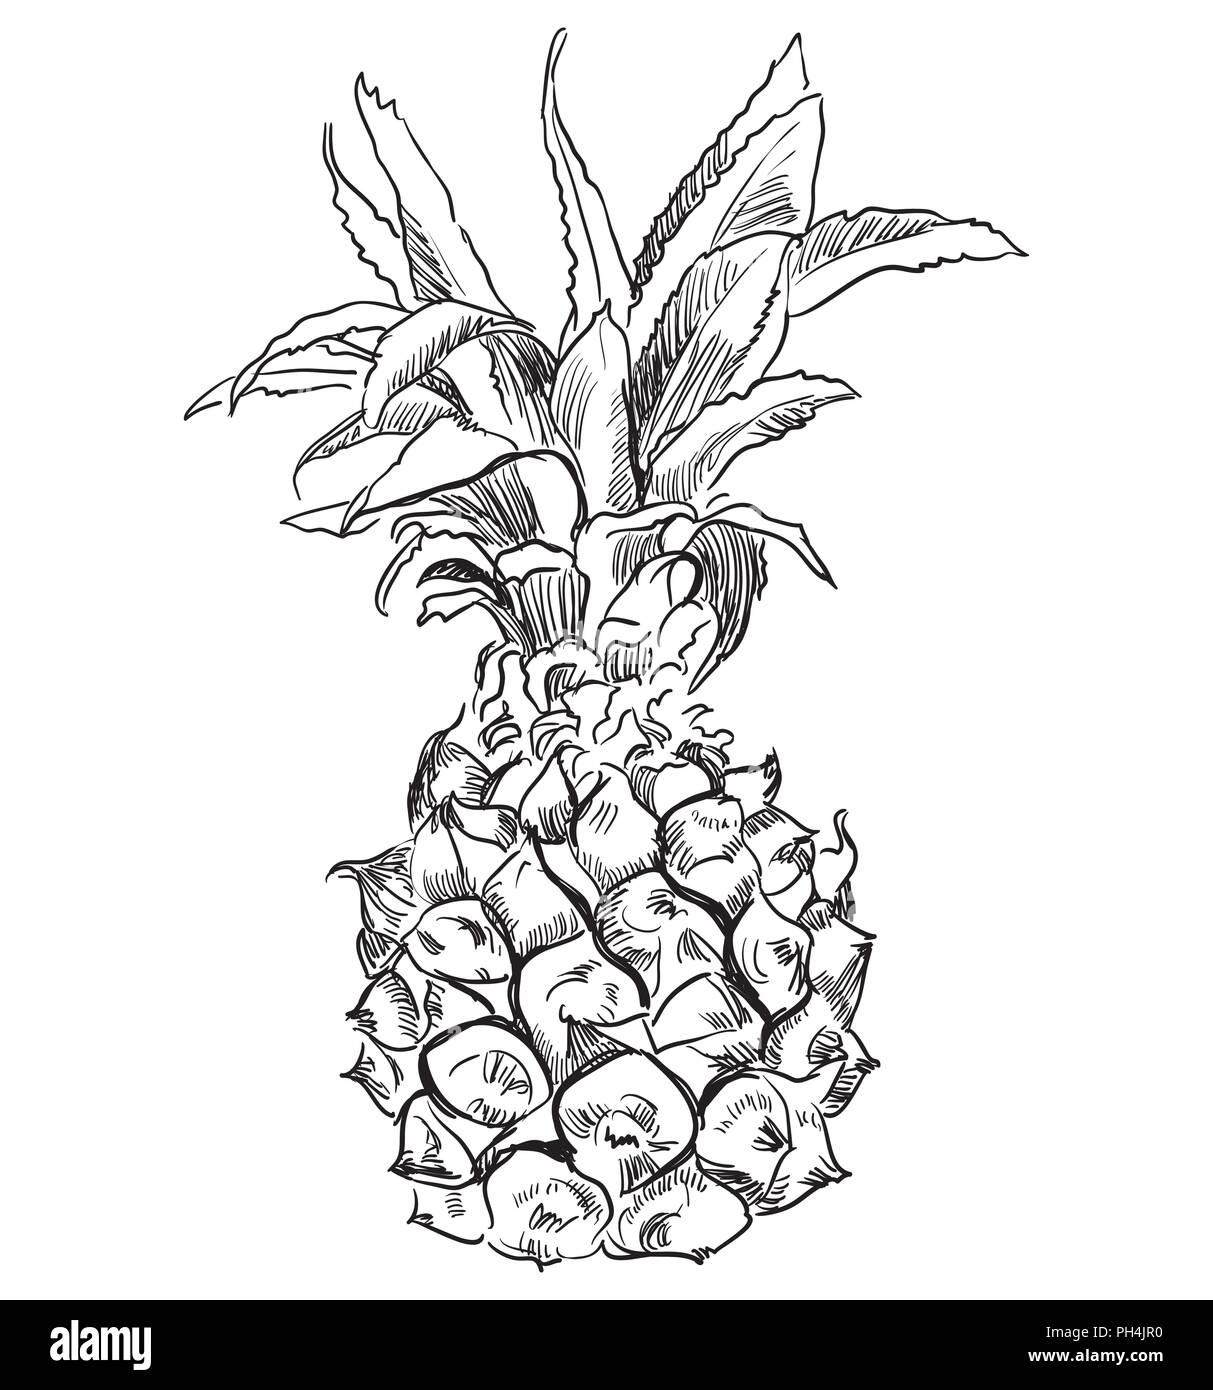 Disegnata da frutto ananas. Vettore illustrazione monocromatica isolati su sfondo bianco. Illustrazione Vettoriale